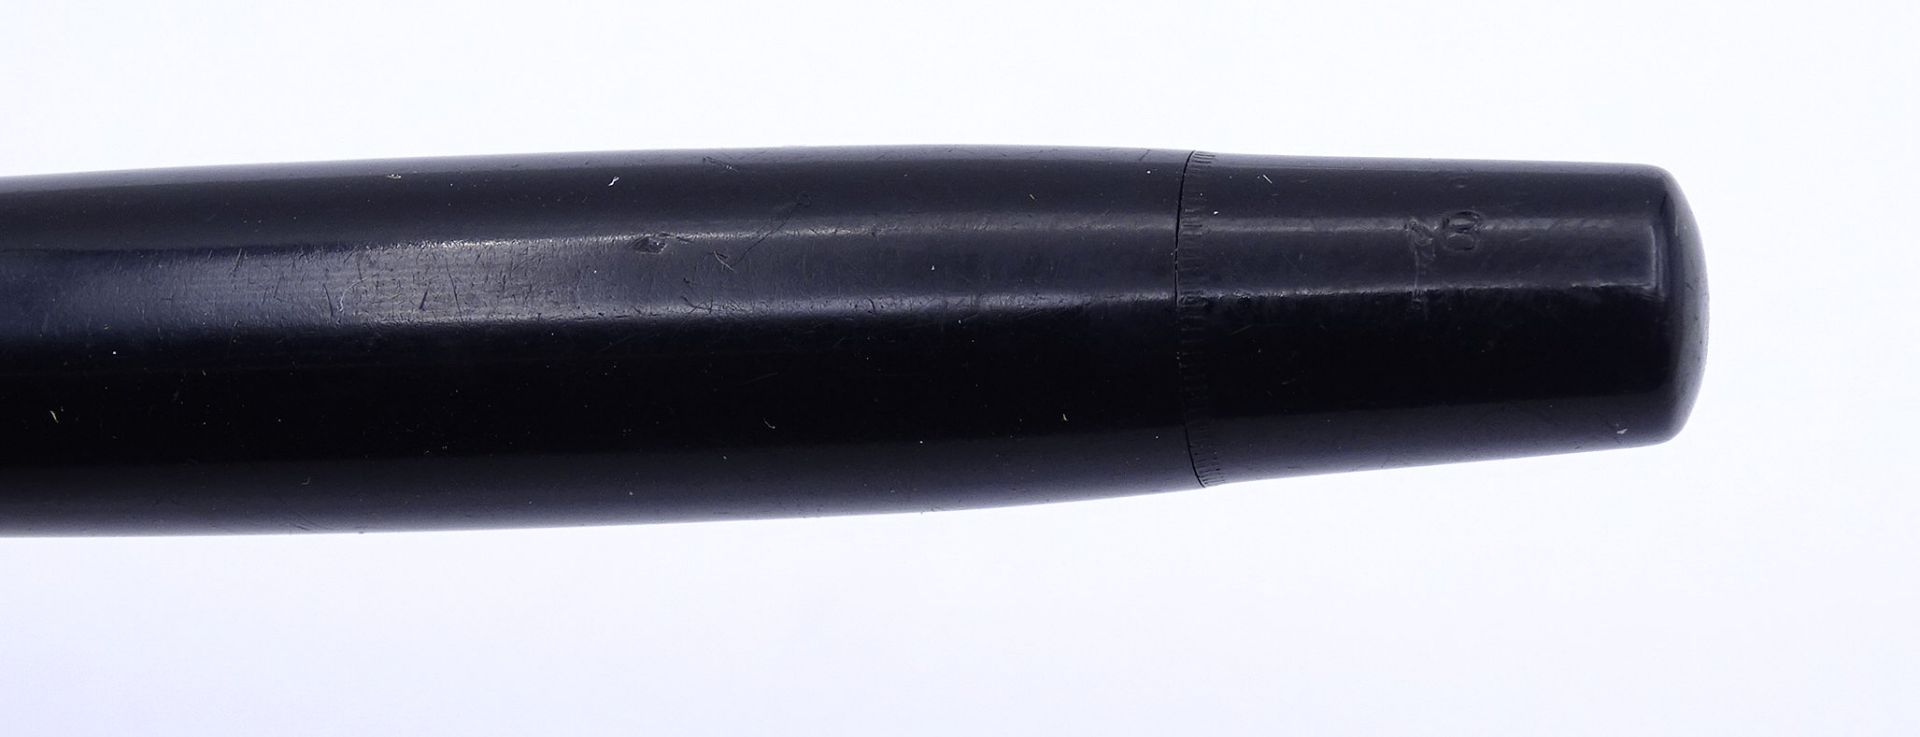 Montblanc Füller No. 234 1/2 G,  Gesamtlänge L. 12,2cm, anbei Schachtel, Alters- und Gebrauchsspure - Bild 6 aus 7